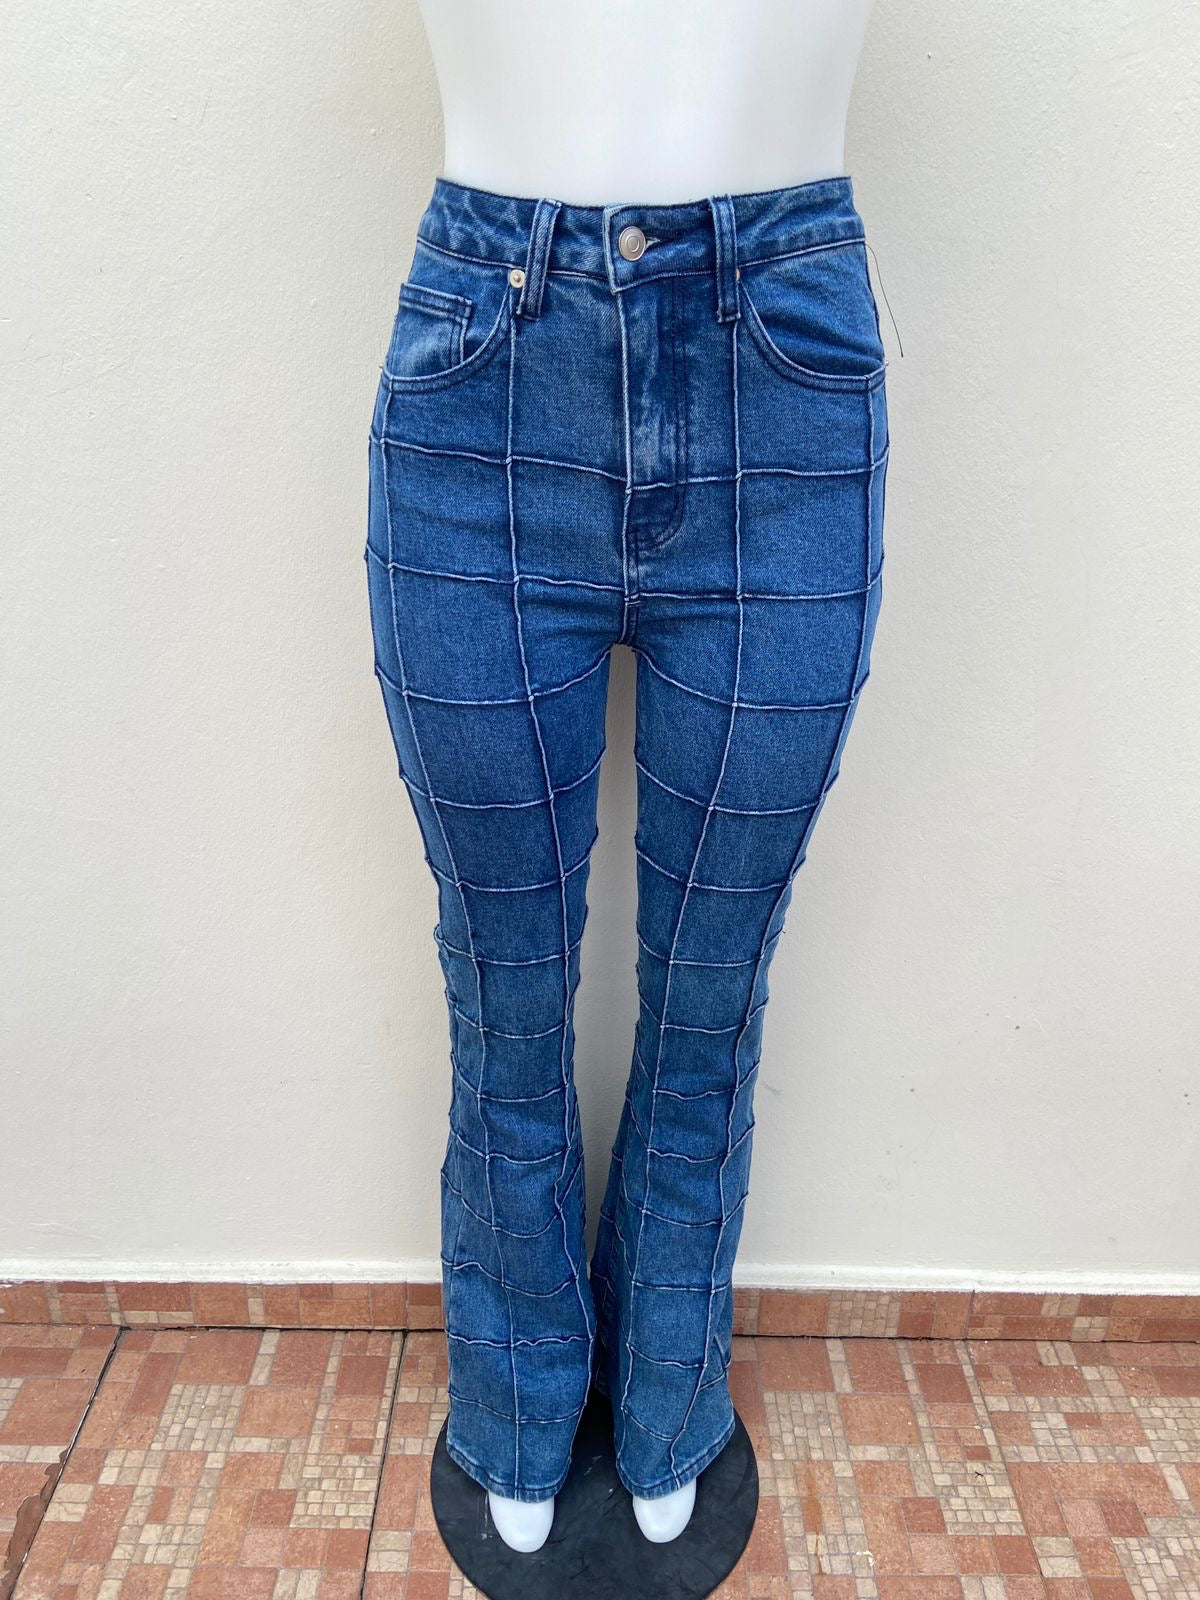 Pantalón jeans Fashion Nova original color azul oscuro con diseños de cuadros